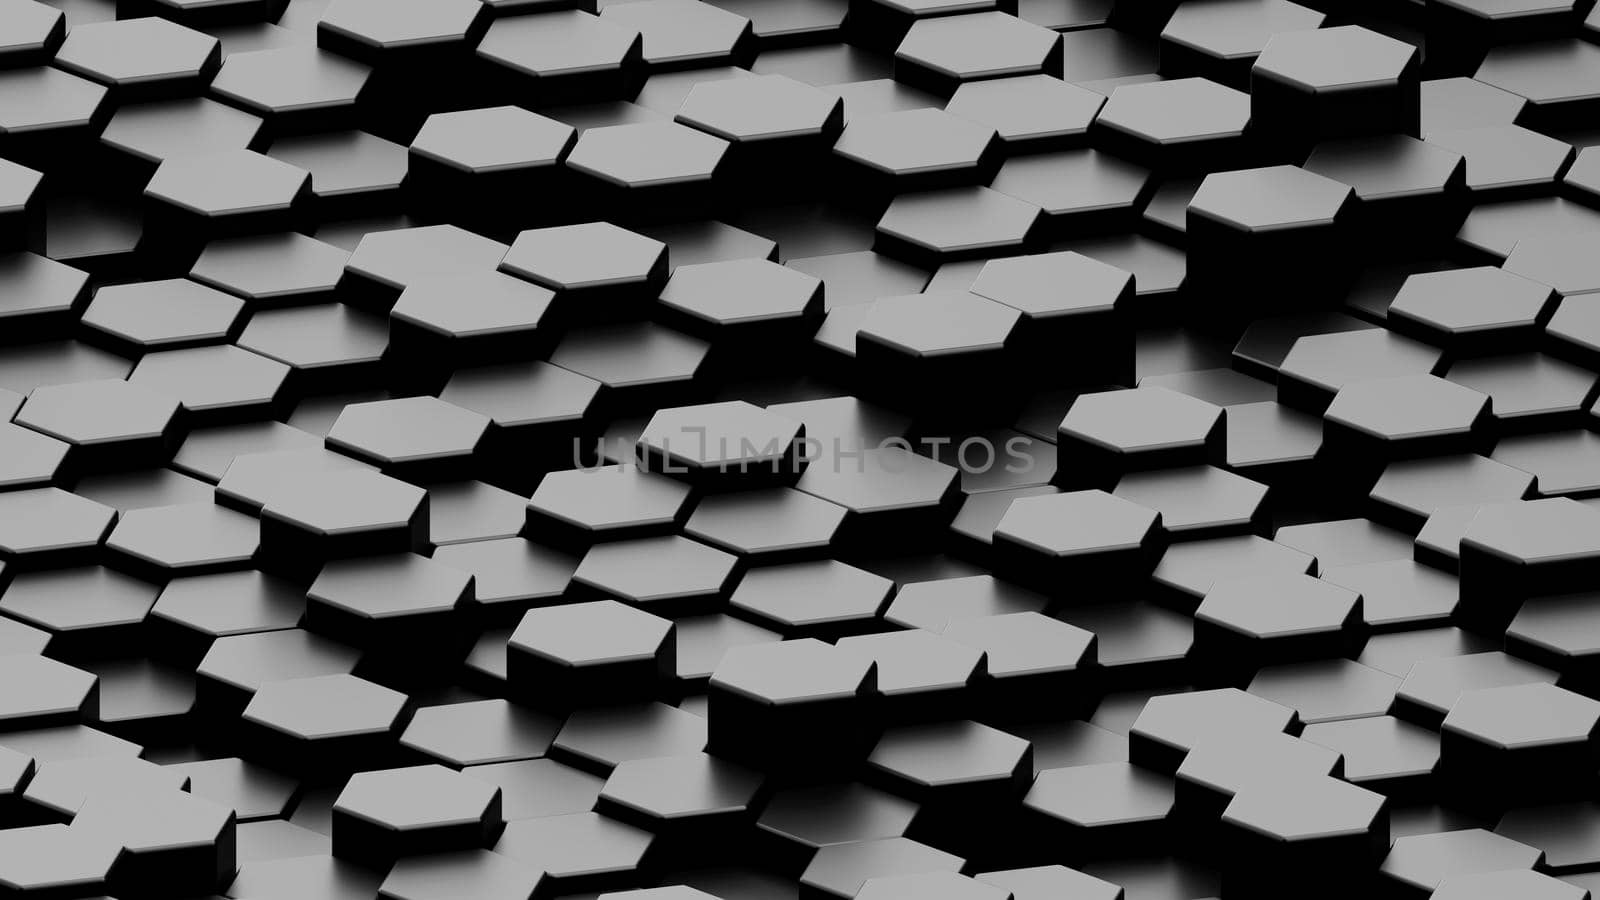 Dark hexagon wallpaper or background. 3d render by raferto1973